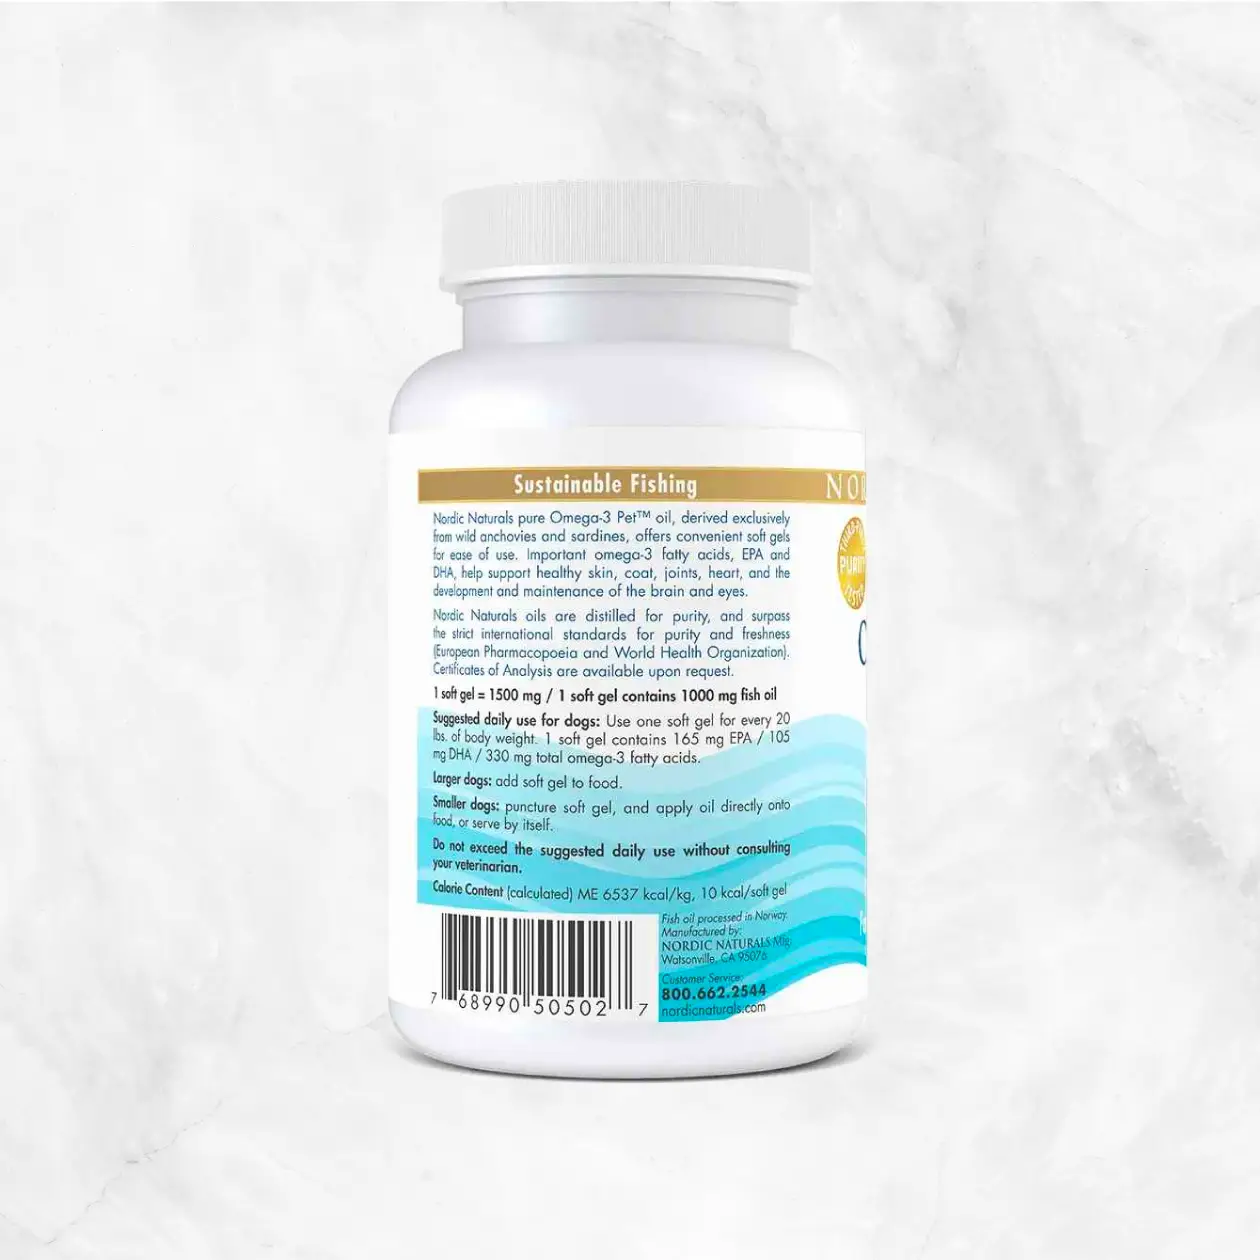 Omega-3 Pet Soft Gels Supplement - Unflavored Delivery